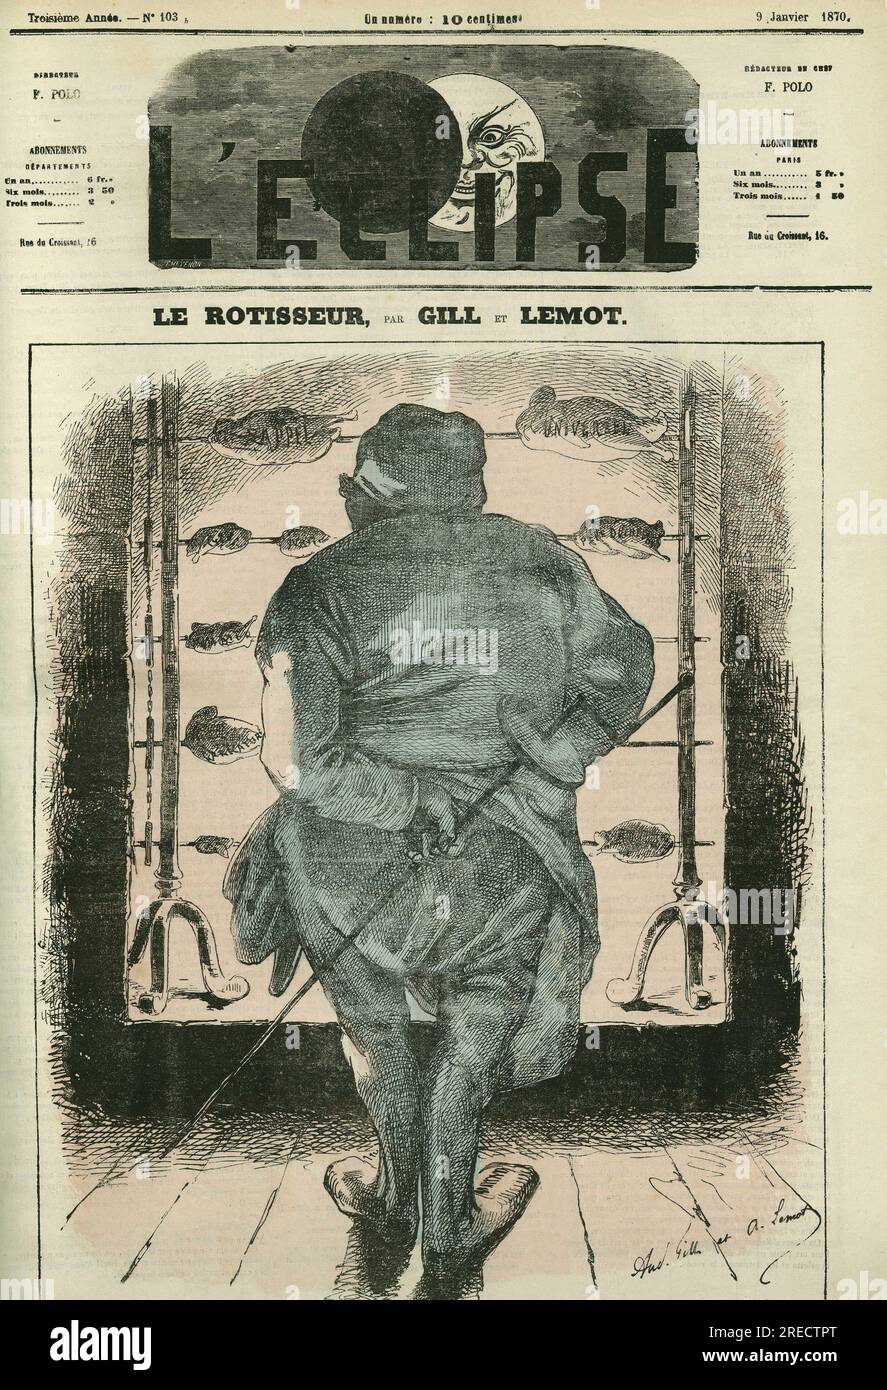 "Le rotisseur", sur les volailles sont inscrits les mots "universel" oder "Seil" . Couverture in „L'Eclipse“, Par Gill et Lemot, le 9 janvier 1870, Paris. Stockfoto